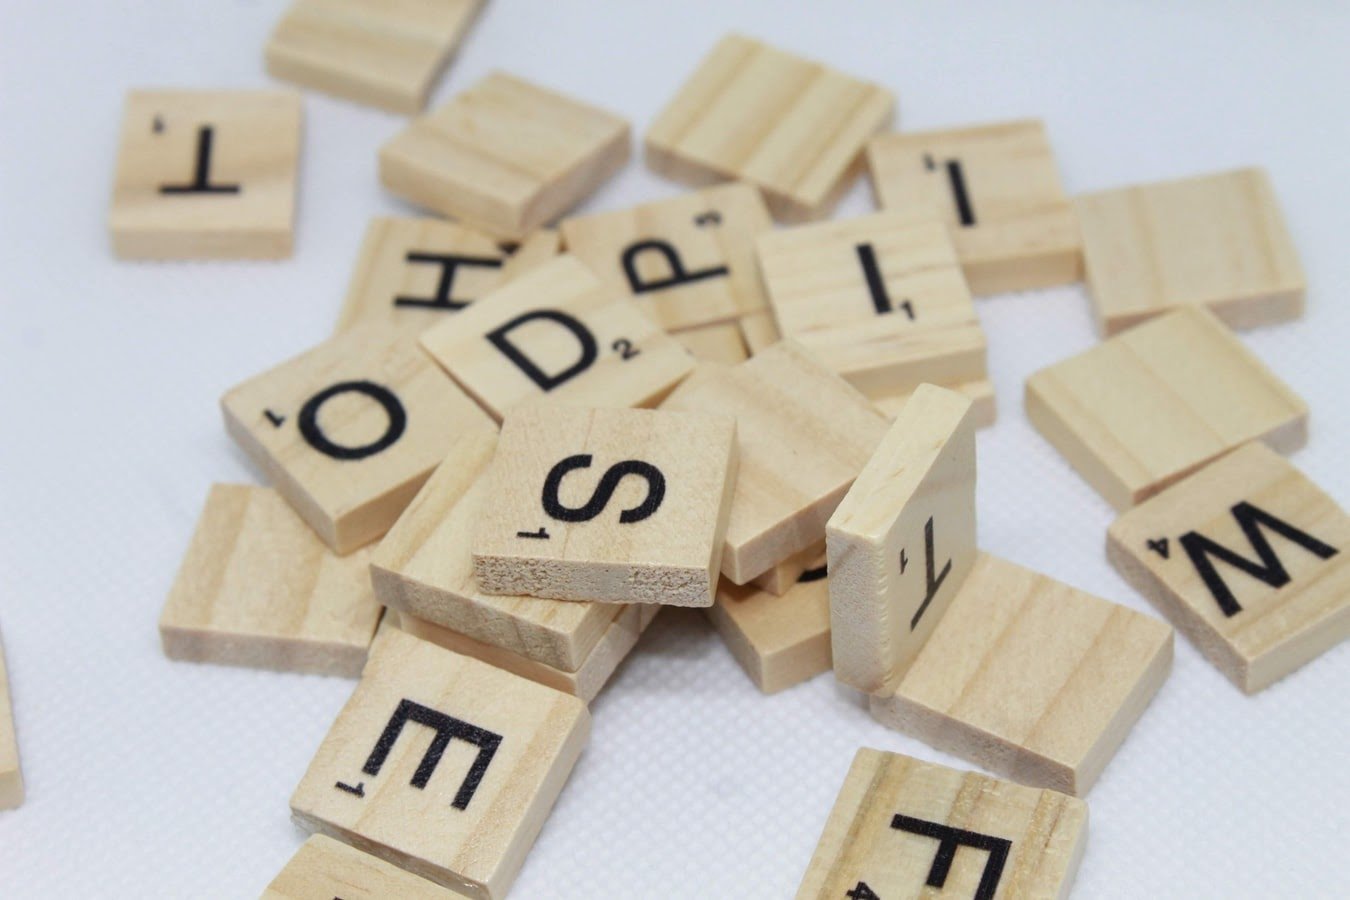 Várias peças de madeira estampadas com letras diversas espalhadas sobre uma superfície, partes de um jogo para formar palavras.